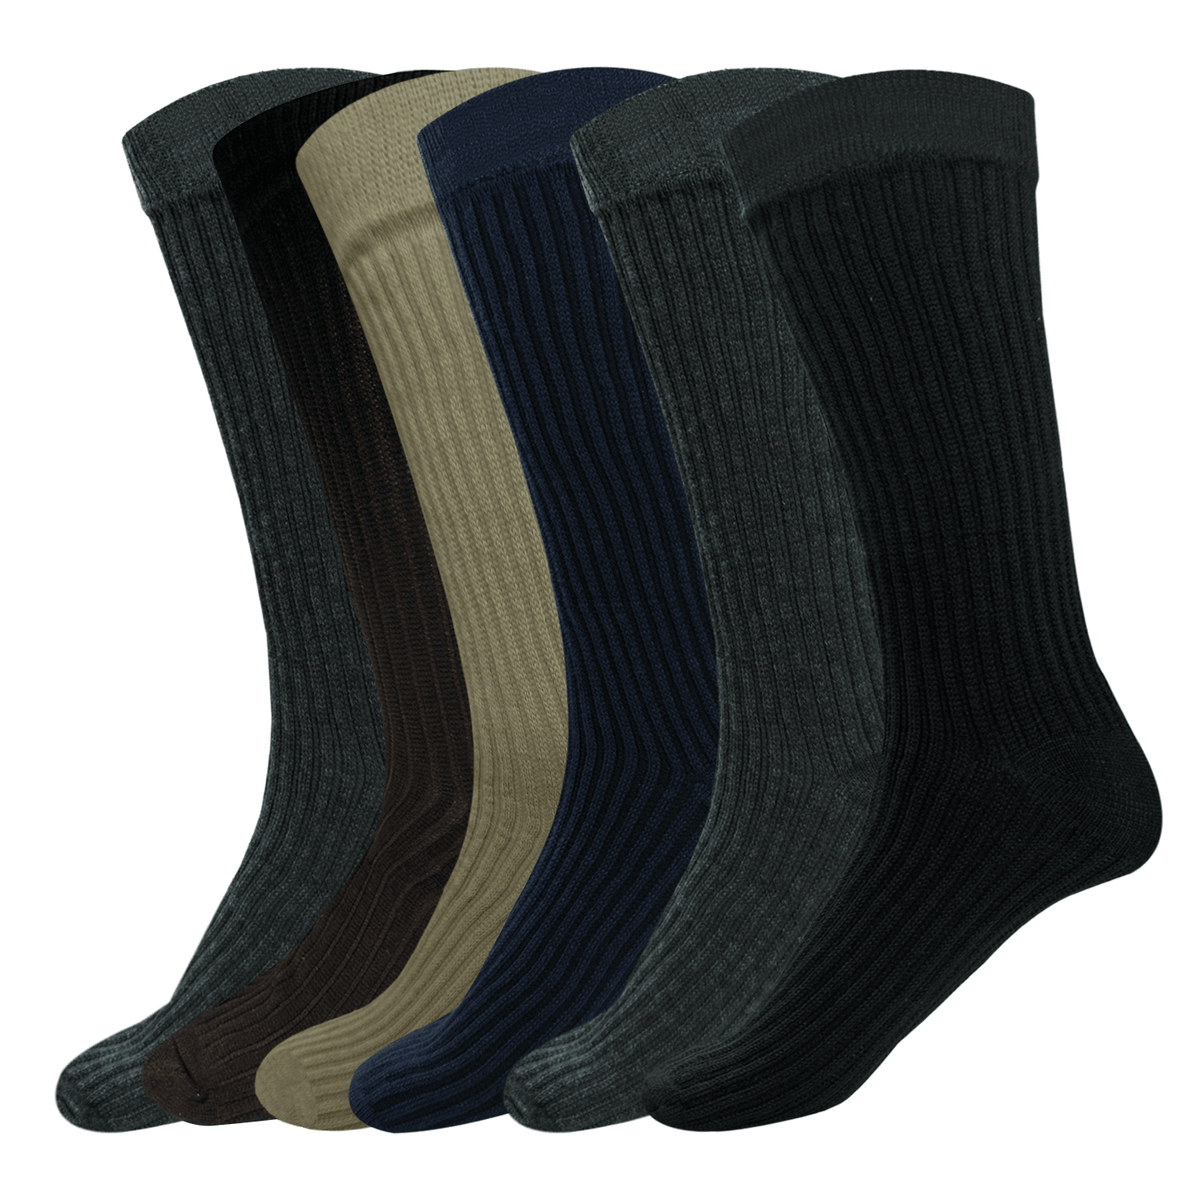 Plus12 Socks (Adult) - Merino Wool Mid-Calf Socks